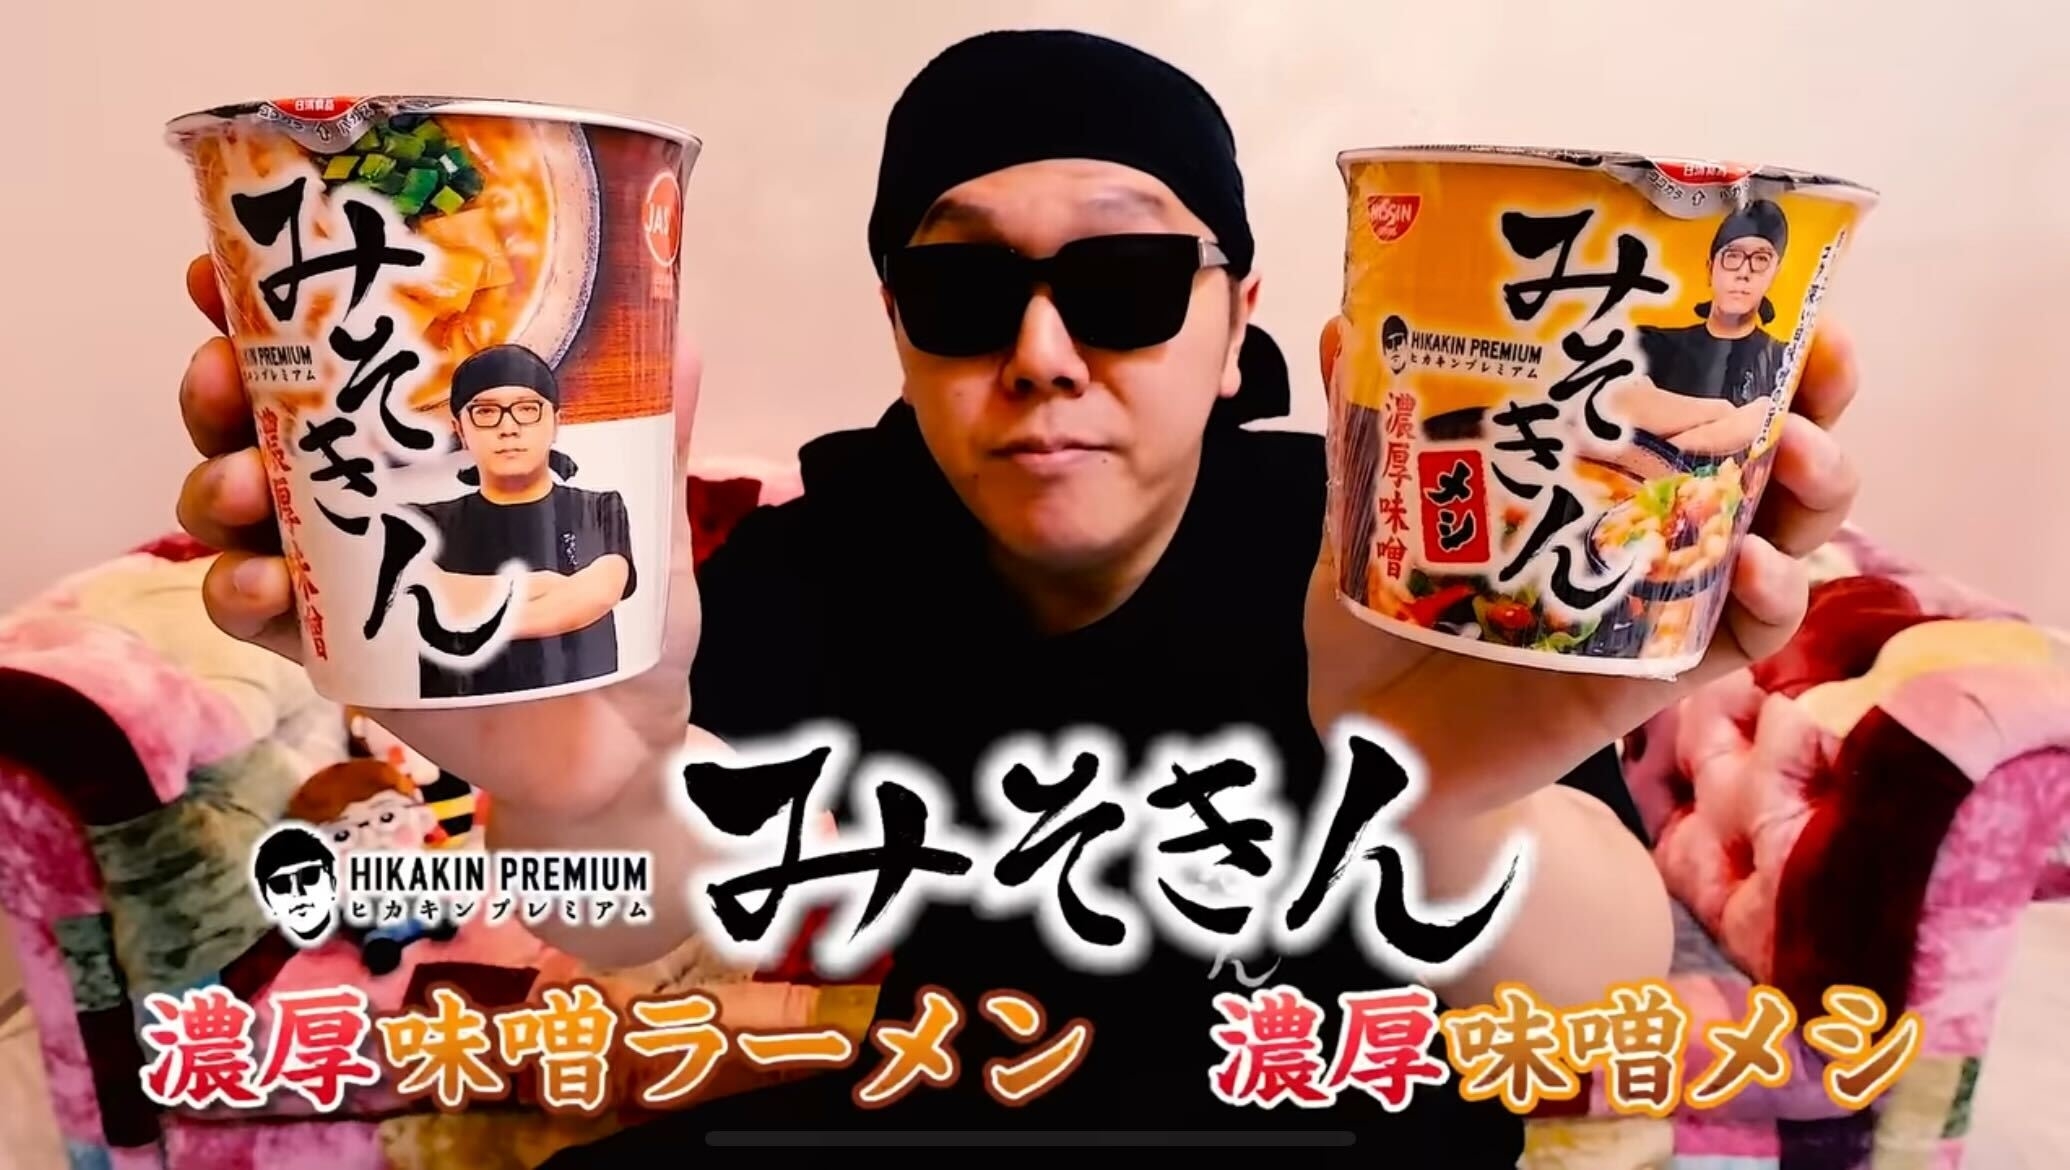 HIKAKINプロデュースのカップ麺「みそきん」8月10日から再販→「待って